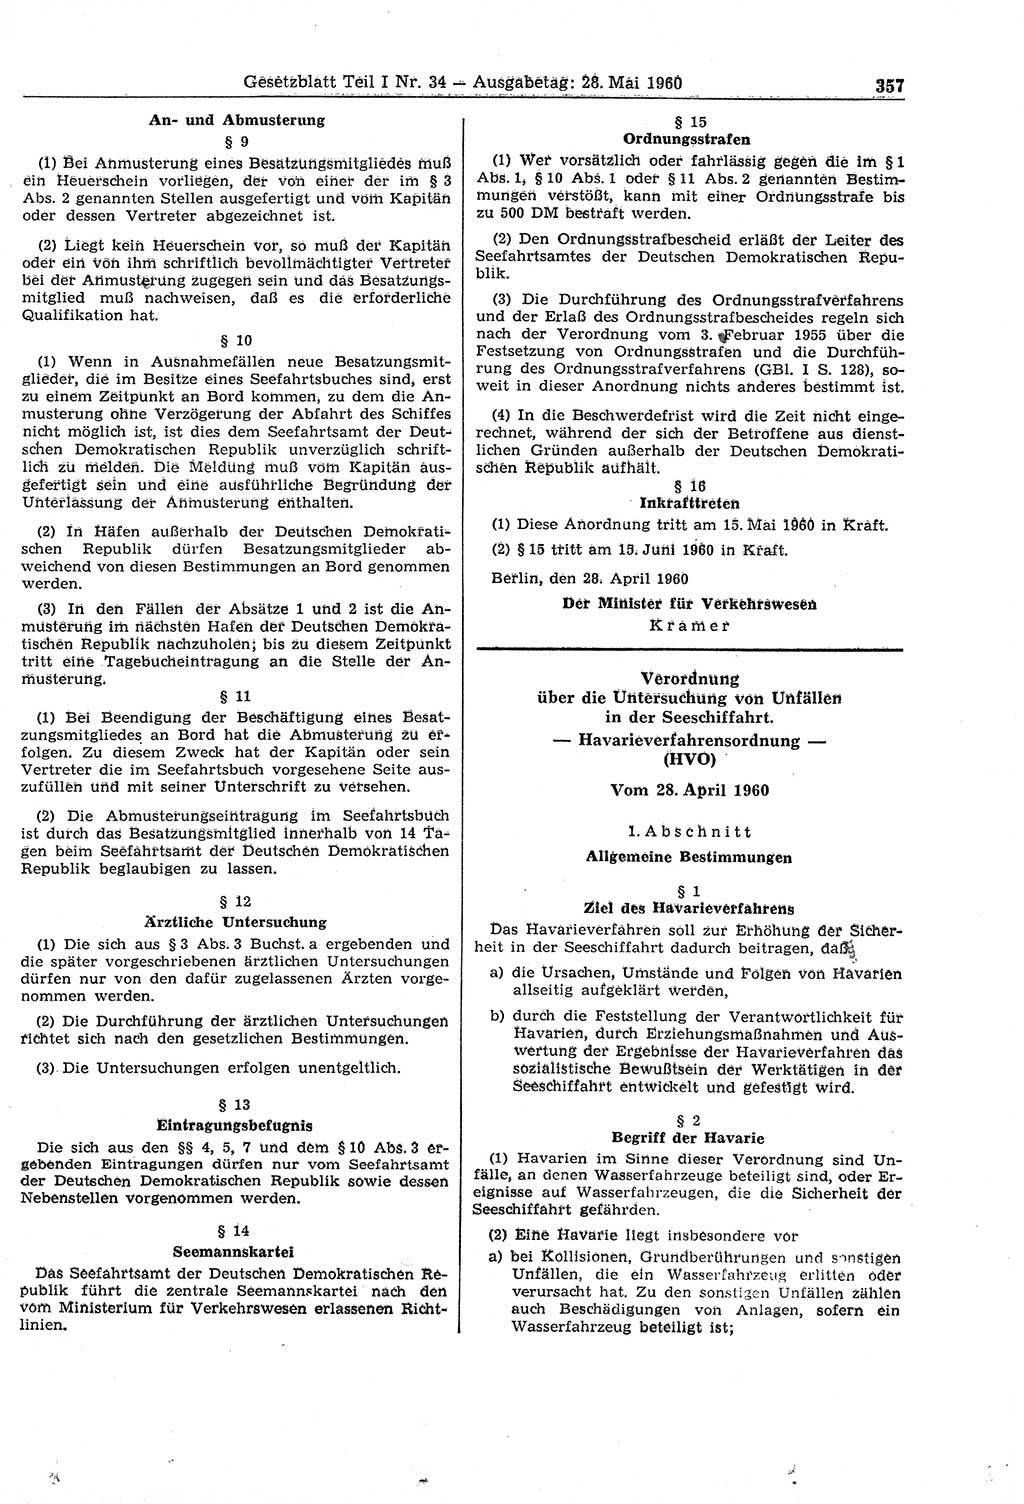 Gesetzblatt (GBl.) der Deutschen Demokratischen Republik (DDR) Teil Ⅰ 1960, Seite 357 (GBl. DDR Ⅰ 1960, S. 357)